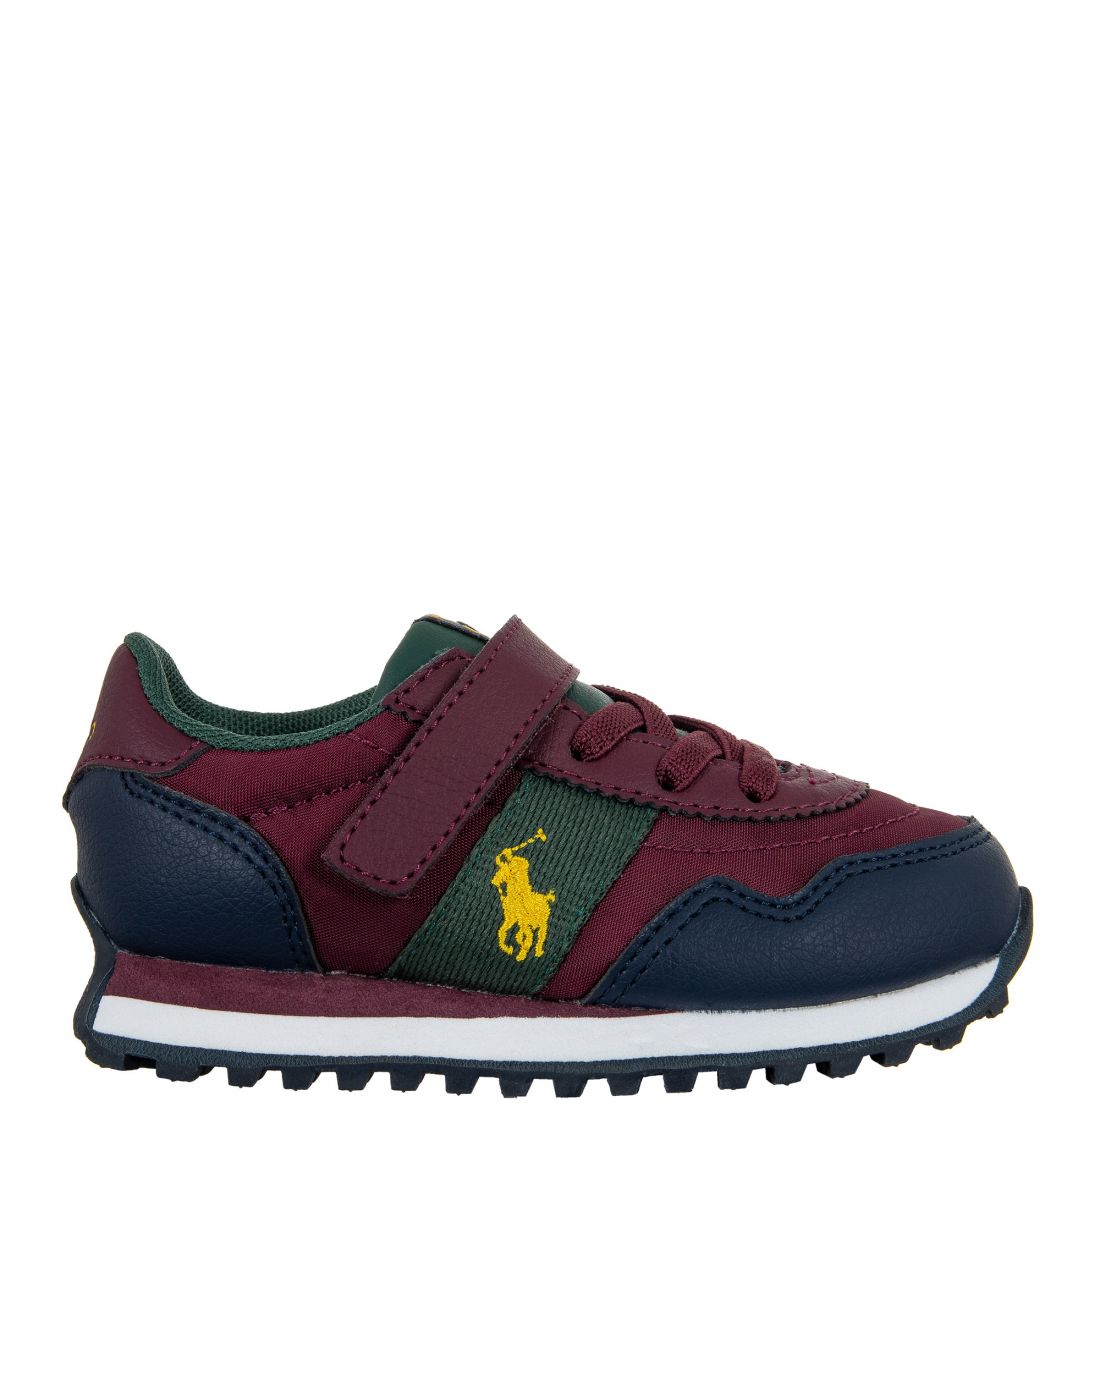 Παιδικά Παπούτσια Sneakers Polo Ralph Lauren, Polo Ralph Lauren, 23265395 |  LapinKids.com | LAPIN KIDS